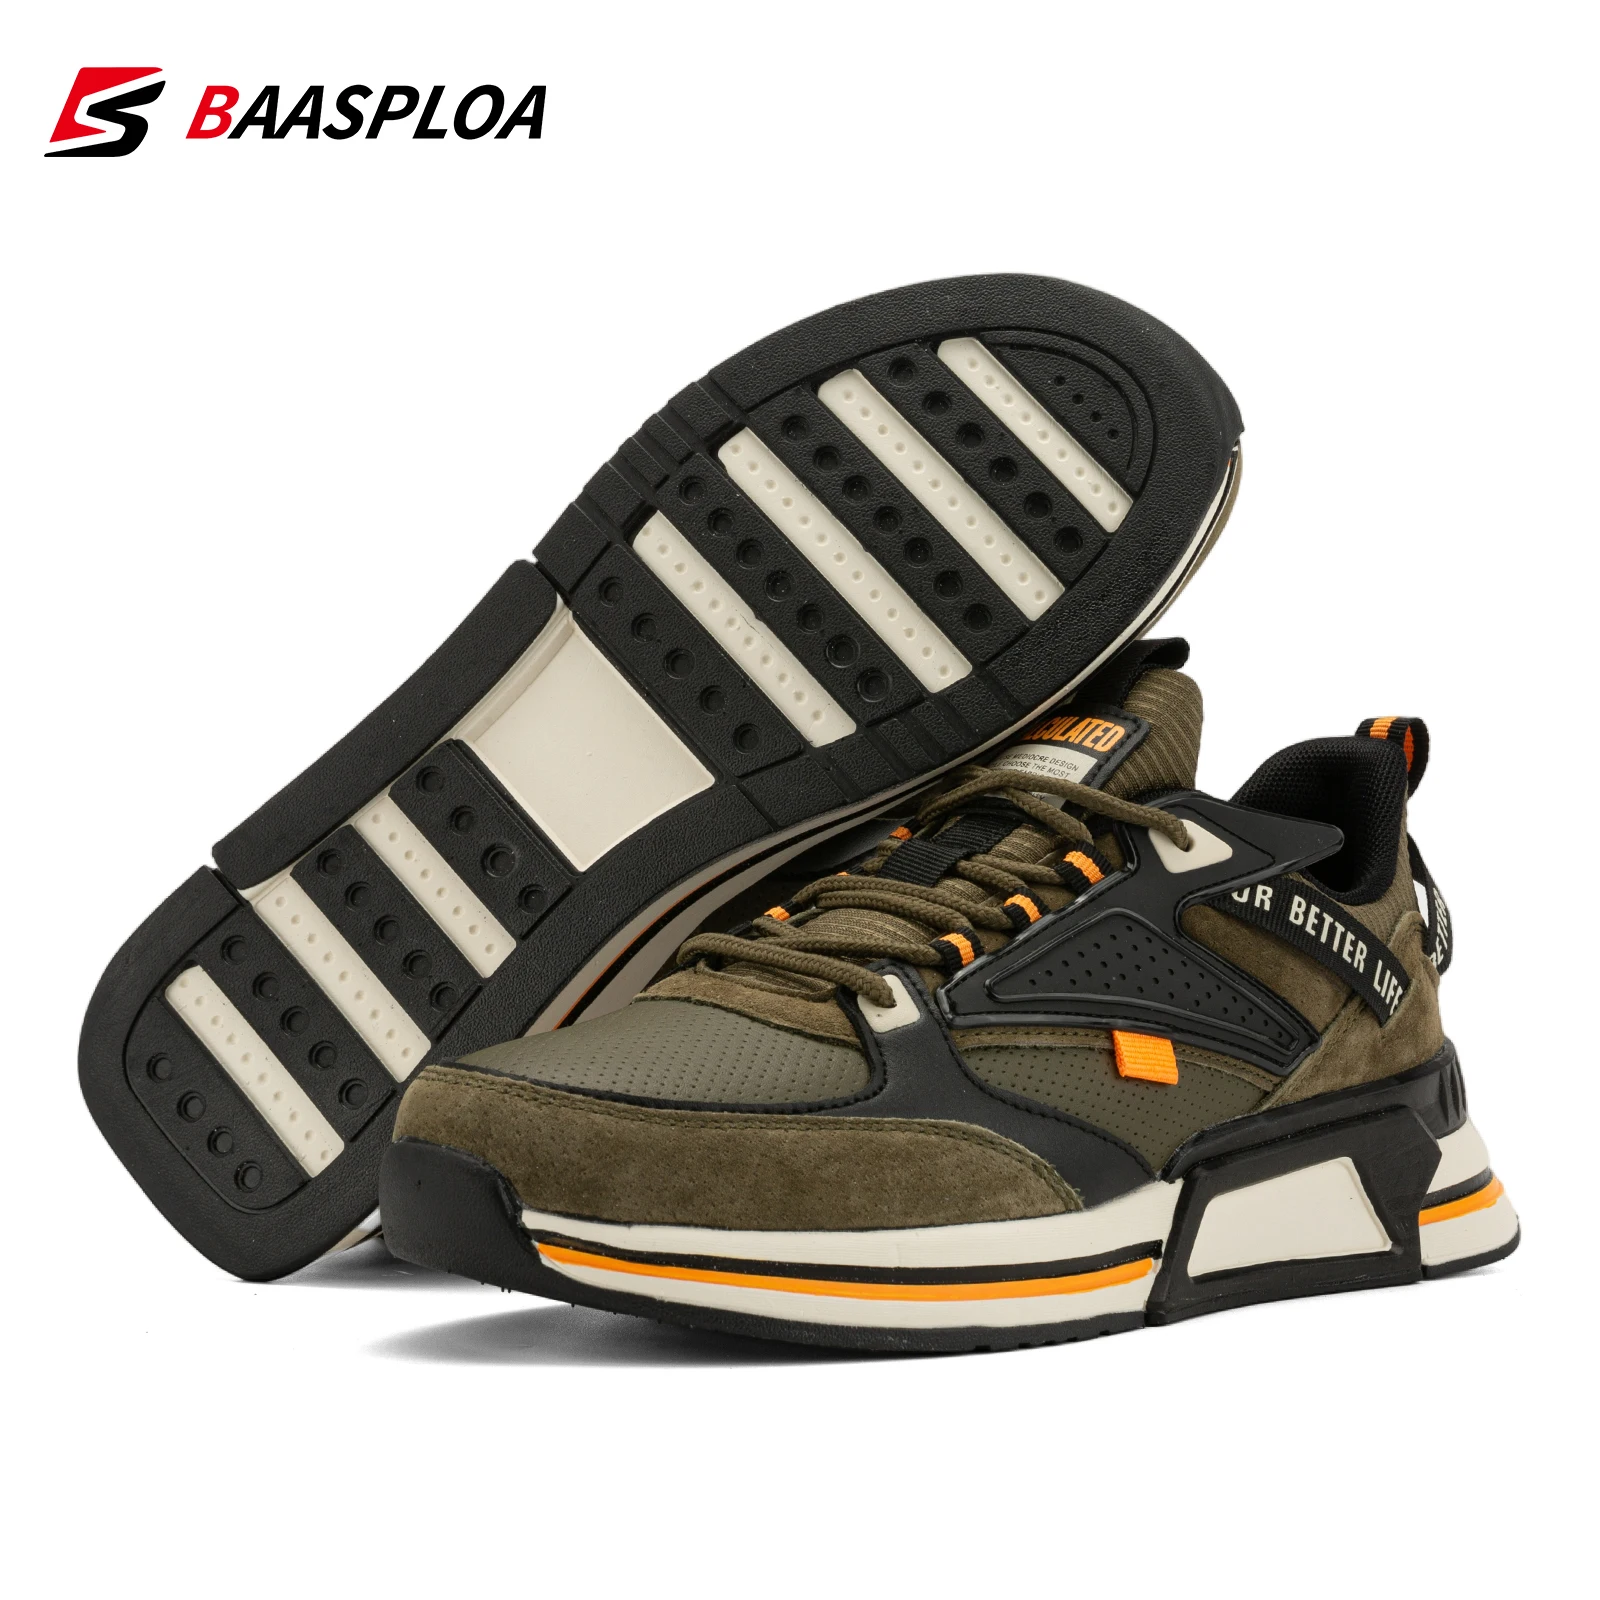 Baasploa Marka orijinal erkekler rahat yürüyüş ayakkabısı yüksek kalite moda koşu ayakkabıları erkek kaymaz Nefes ışık Sneakers